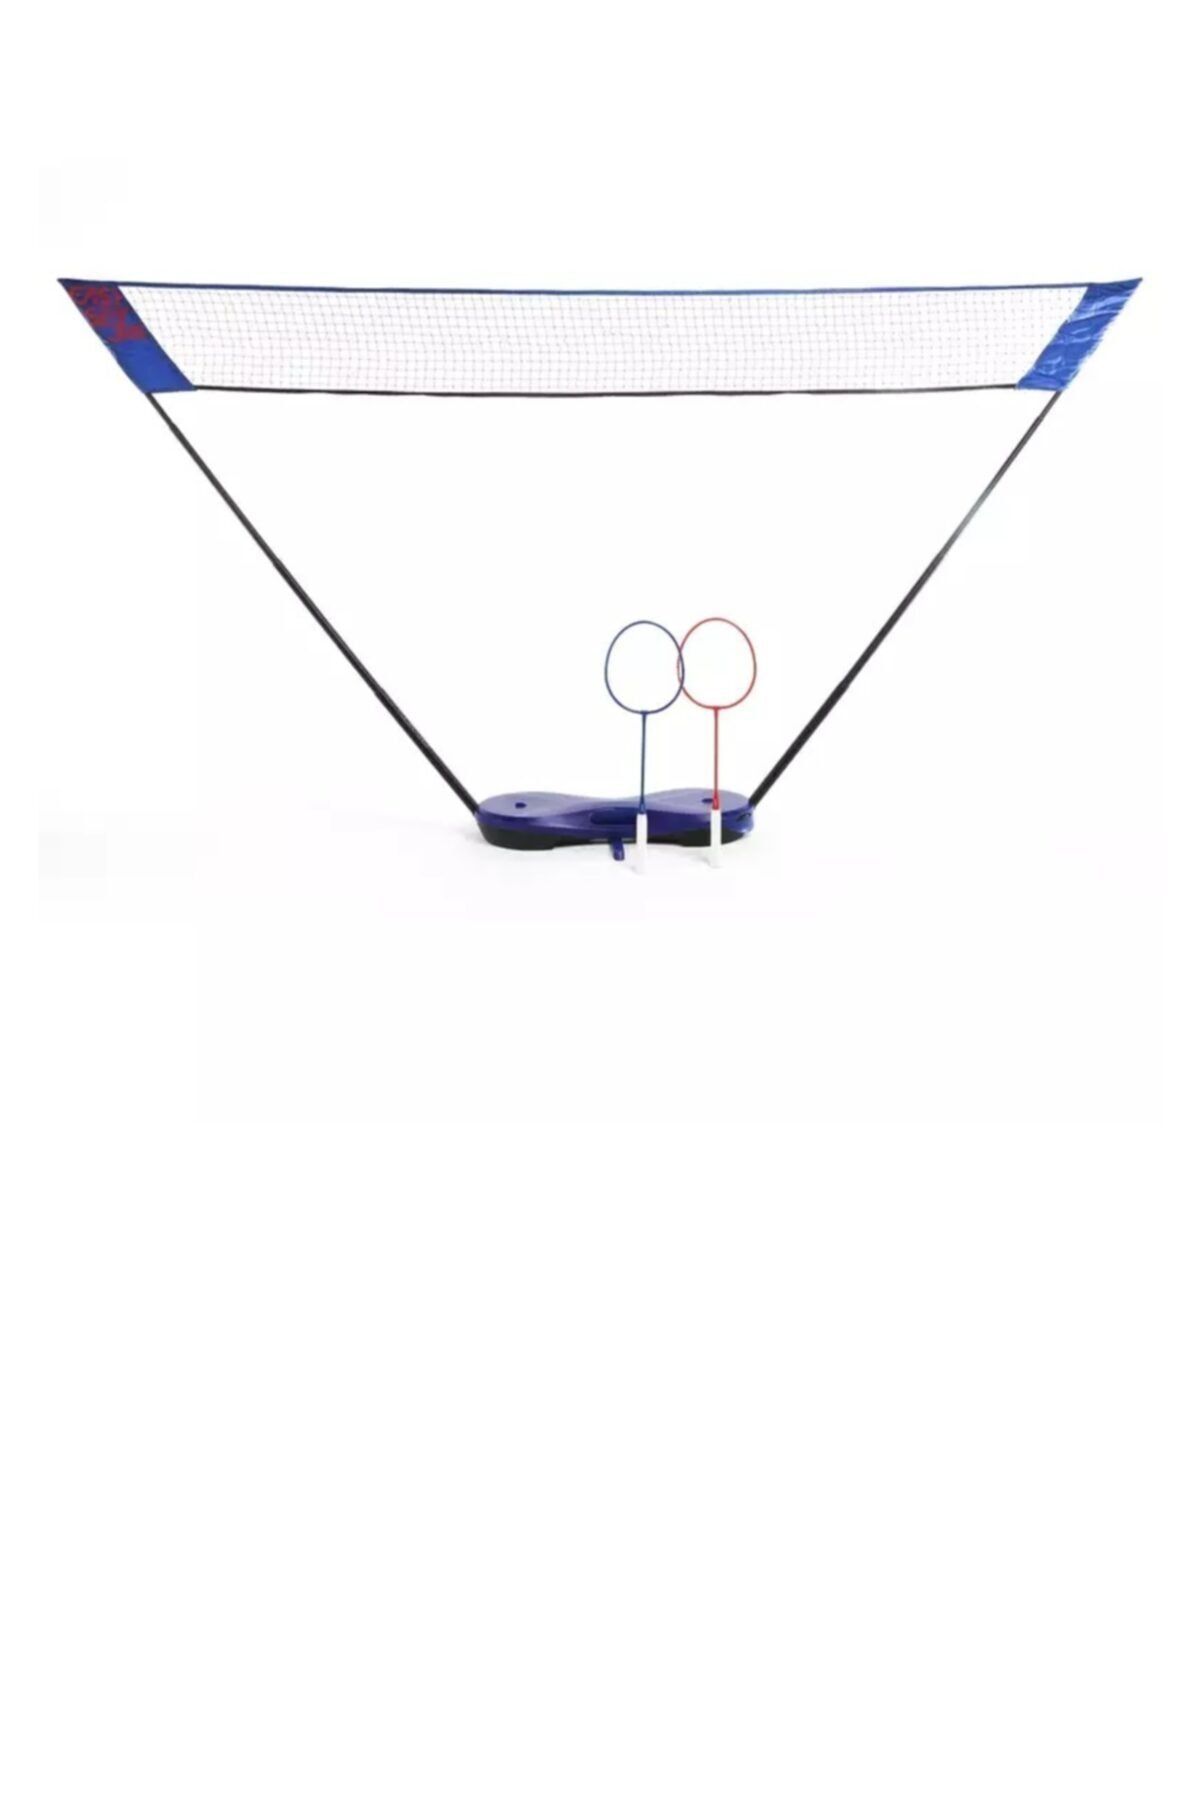 Decathlon Mavi - Badminton Seti 3 Metre Mavi Easy Perfly